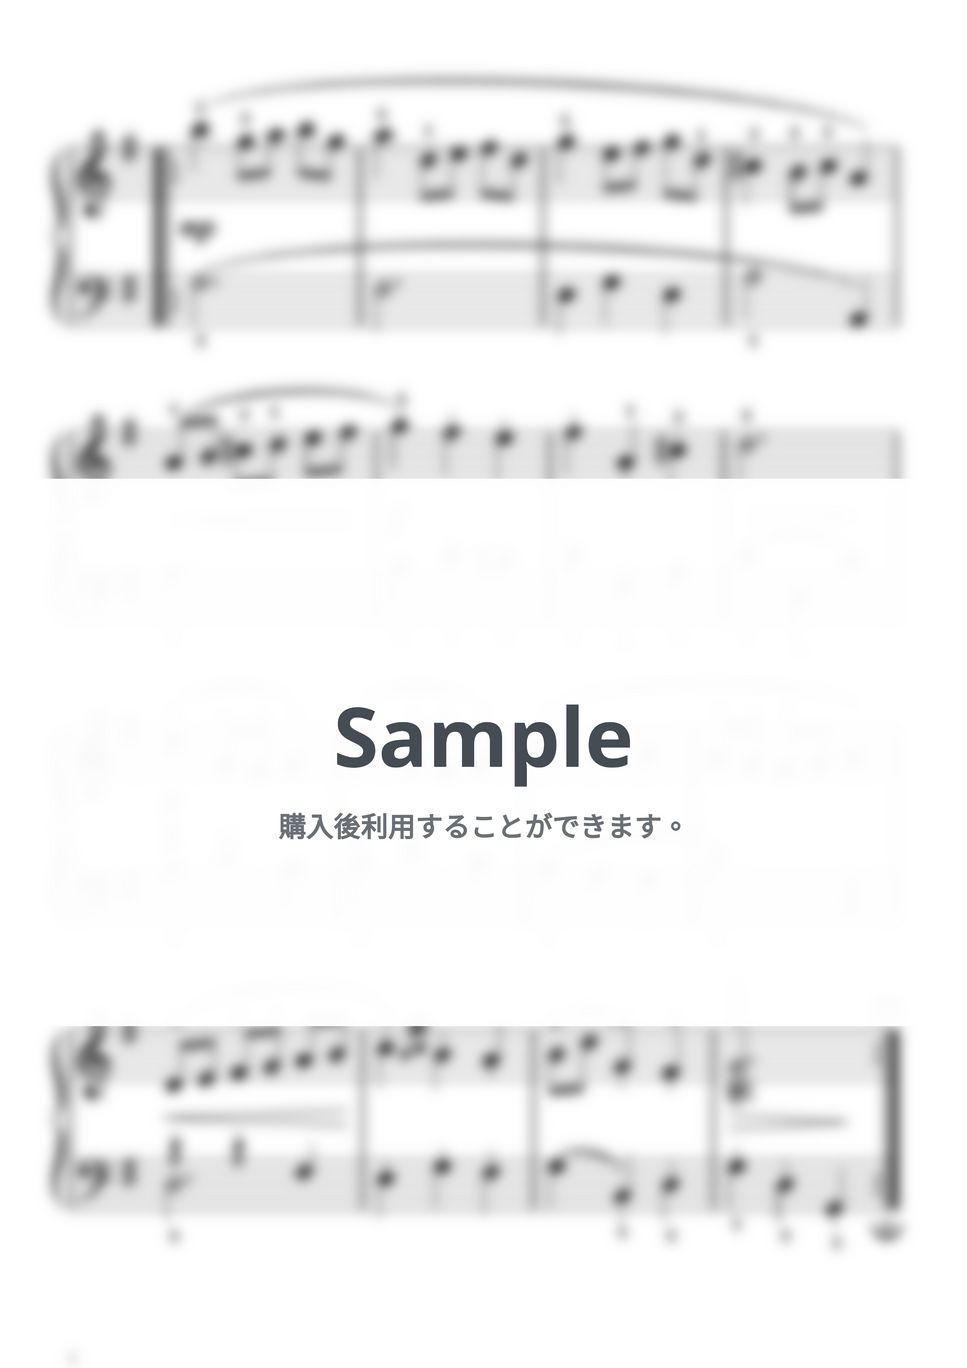 バッハ - メヌエット ト長調(ペッツオールト/バッハ)BWV Anh.114 by ピアノの先生の楽譜集